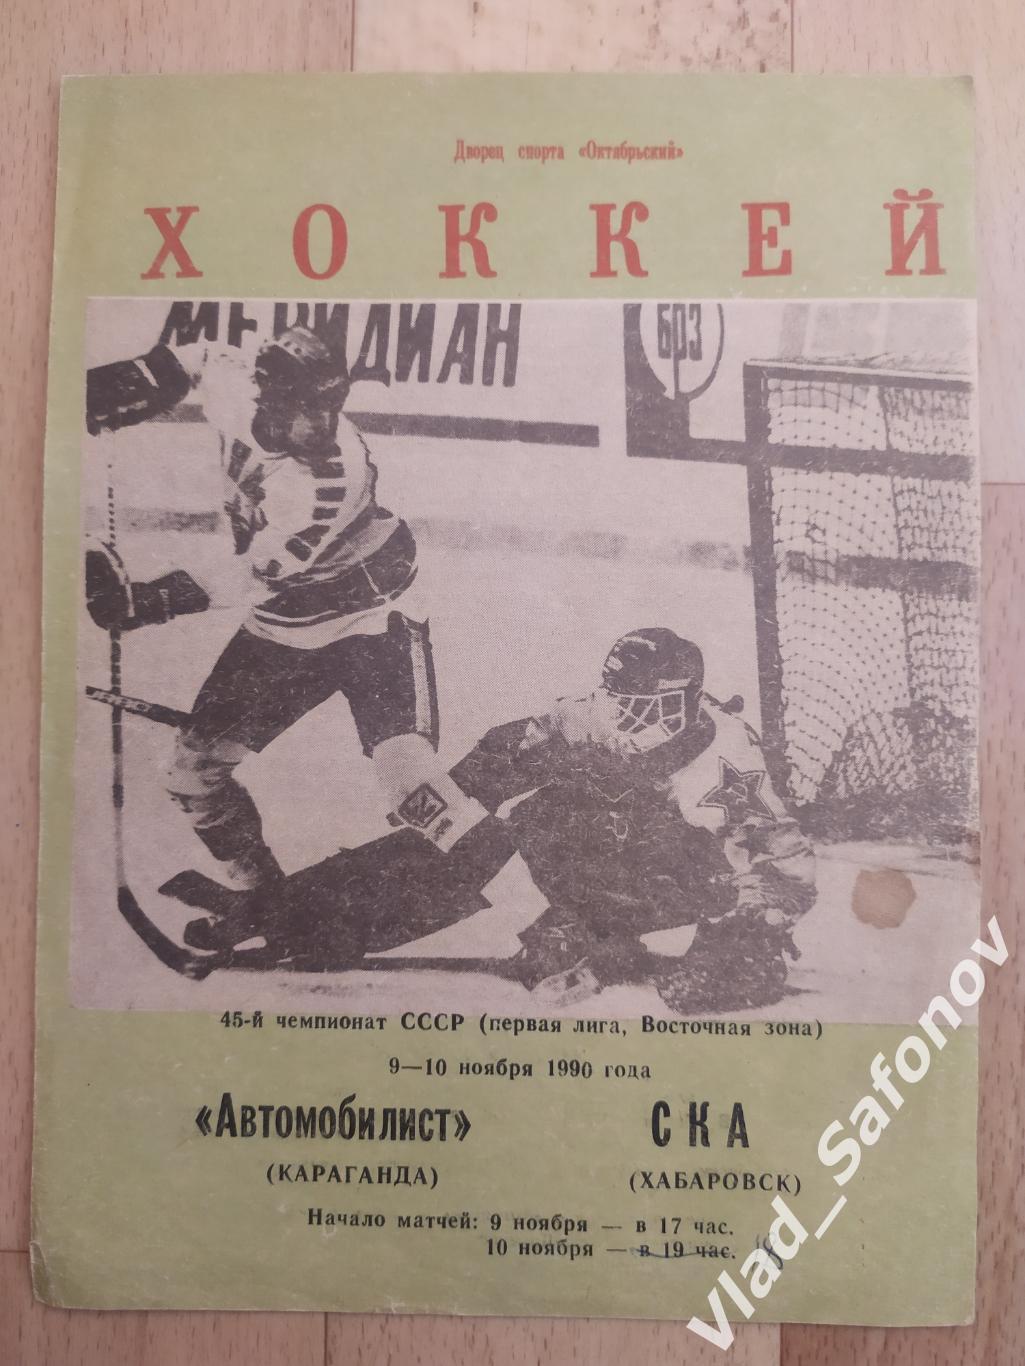 Автомобилист(Караганда) - Ска(Хабаровск). 1 лига. 9-10/11/1990